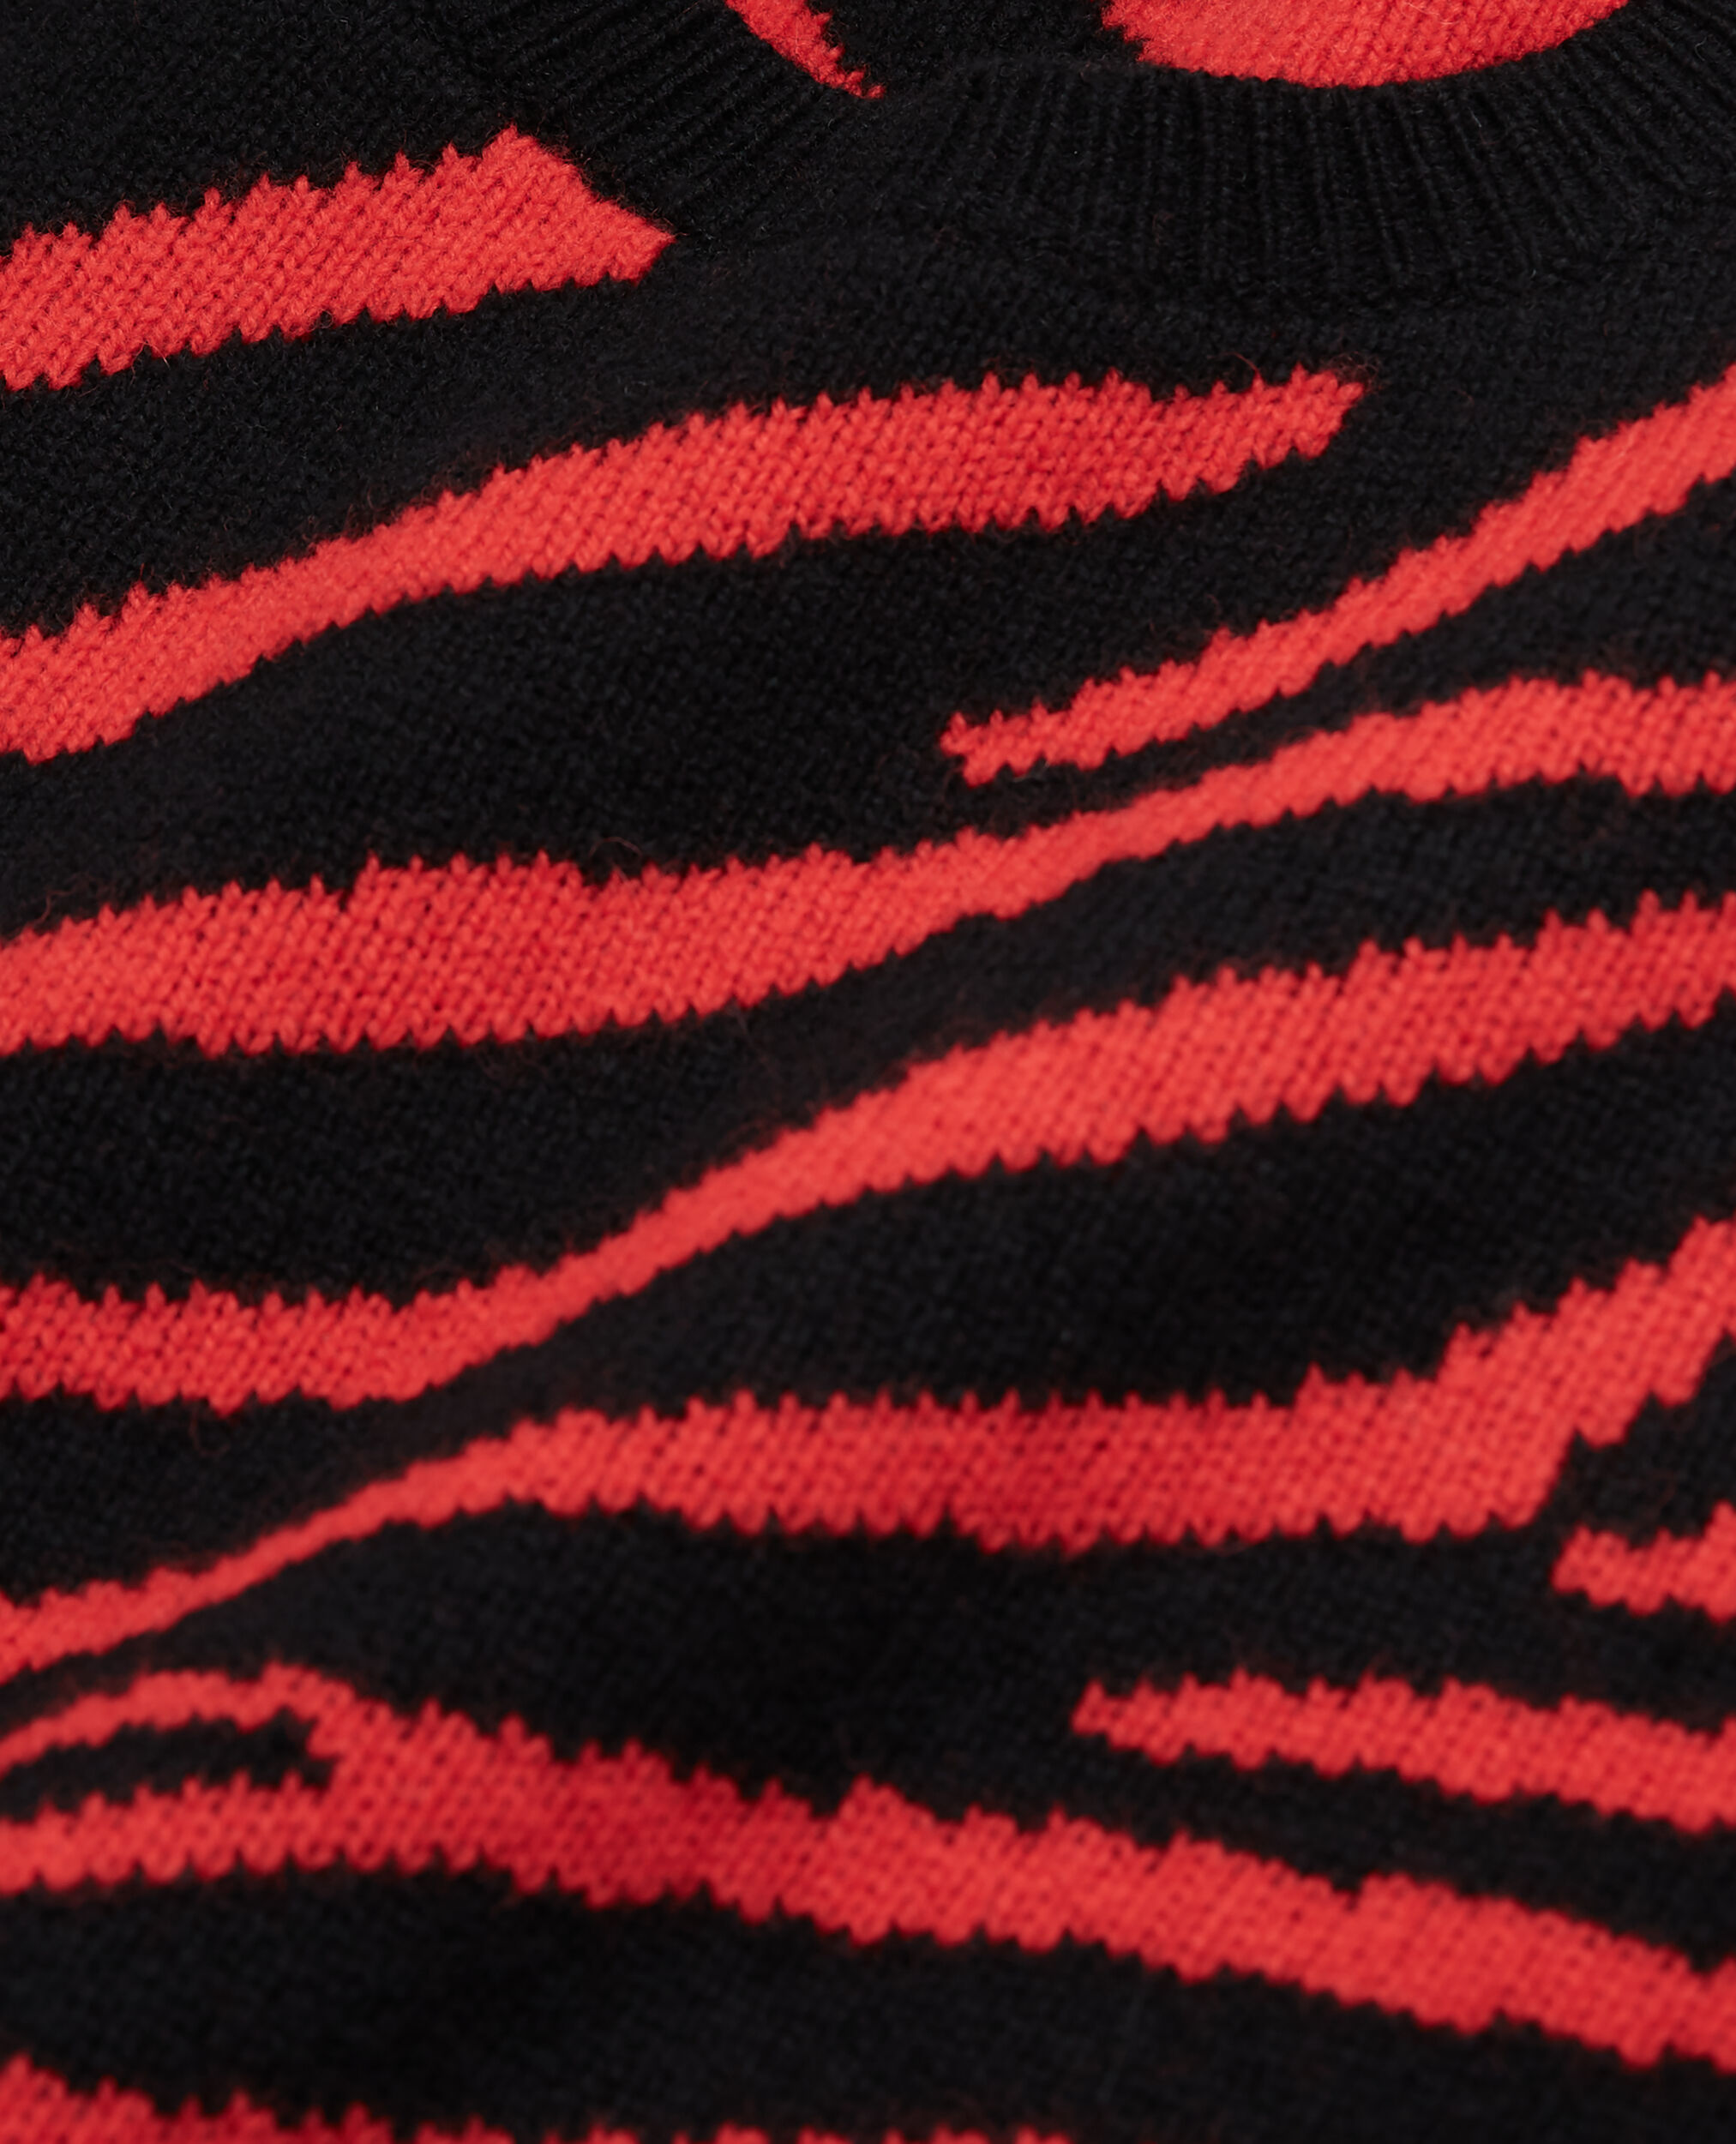 Bedruckter Pullover mit Rundhalsausschnitt, BLACK - RED, hi-res image number null